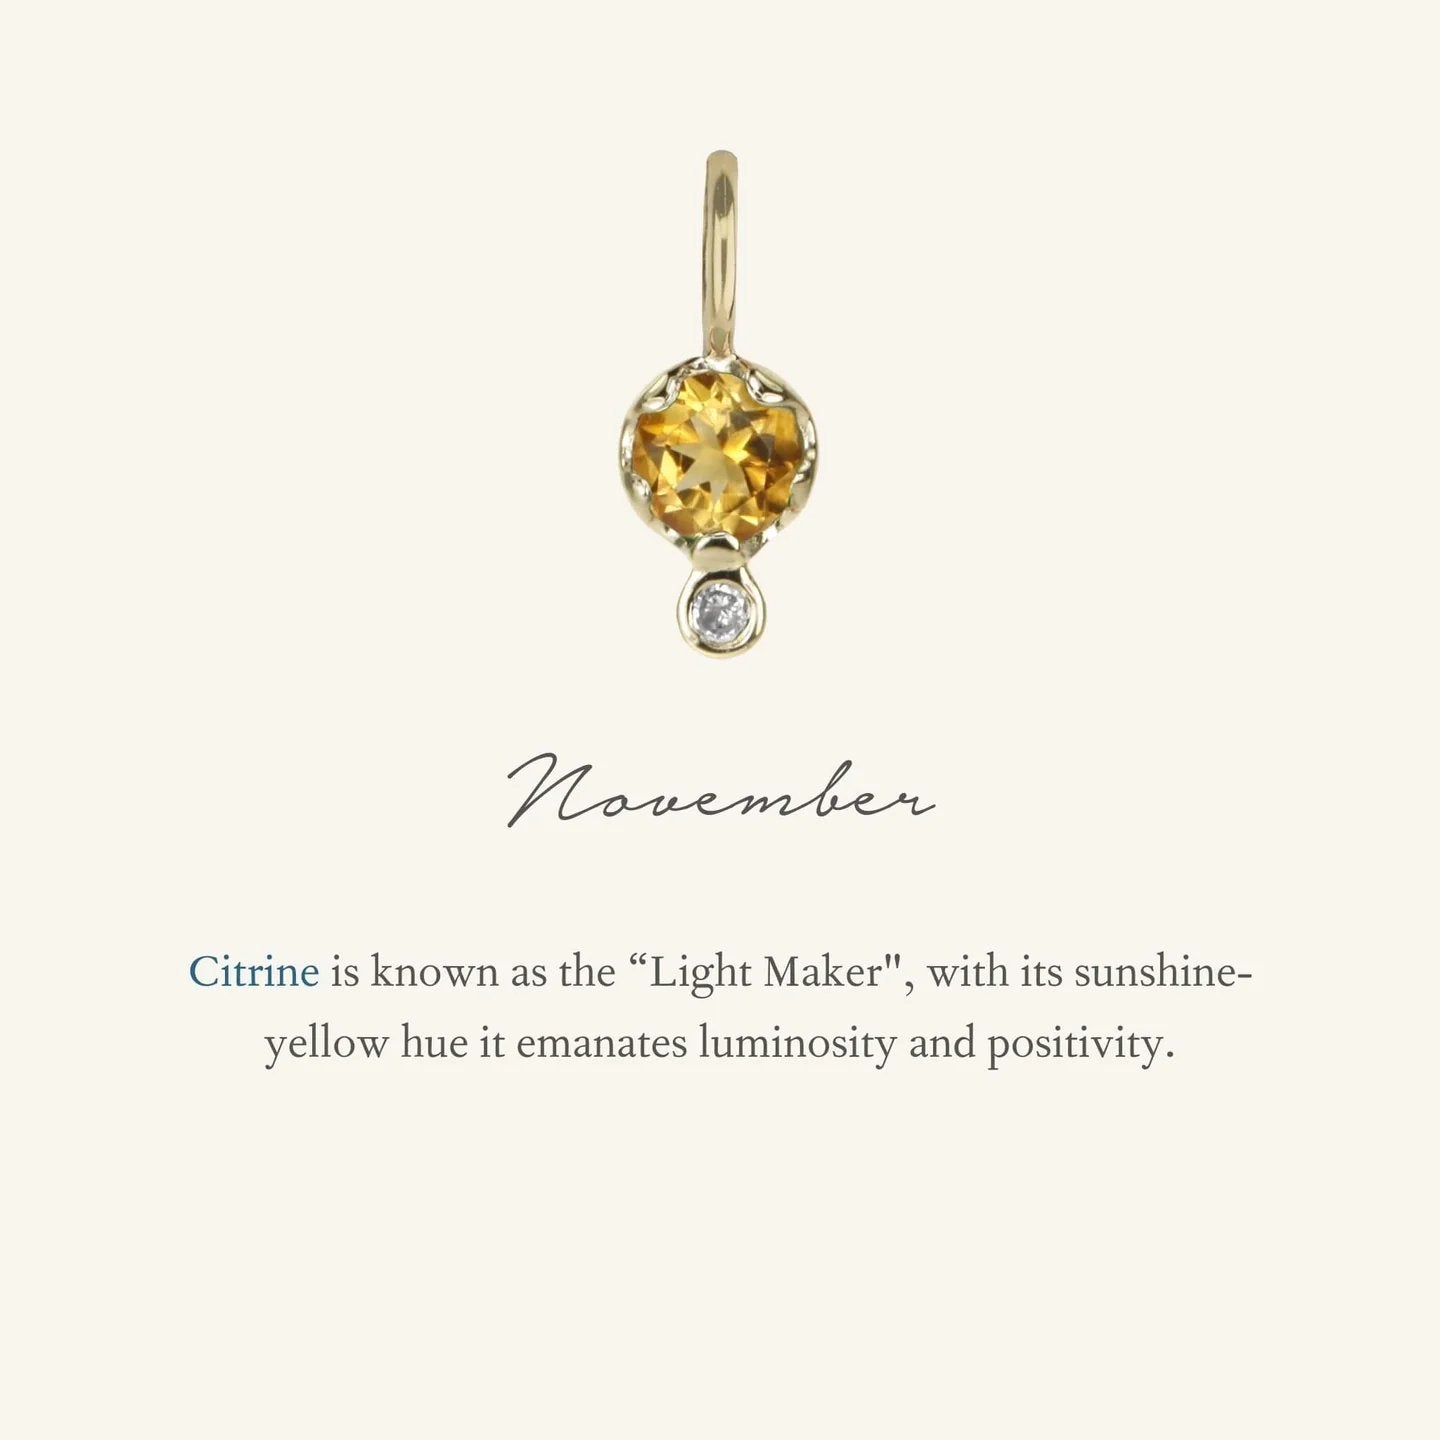 10K Gold Citrine Birthstone Charm with Diamond Drop - Peridot Fine Jewelry - Zahava